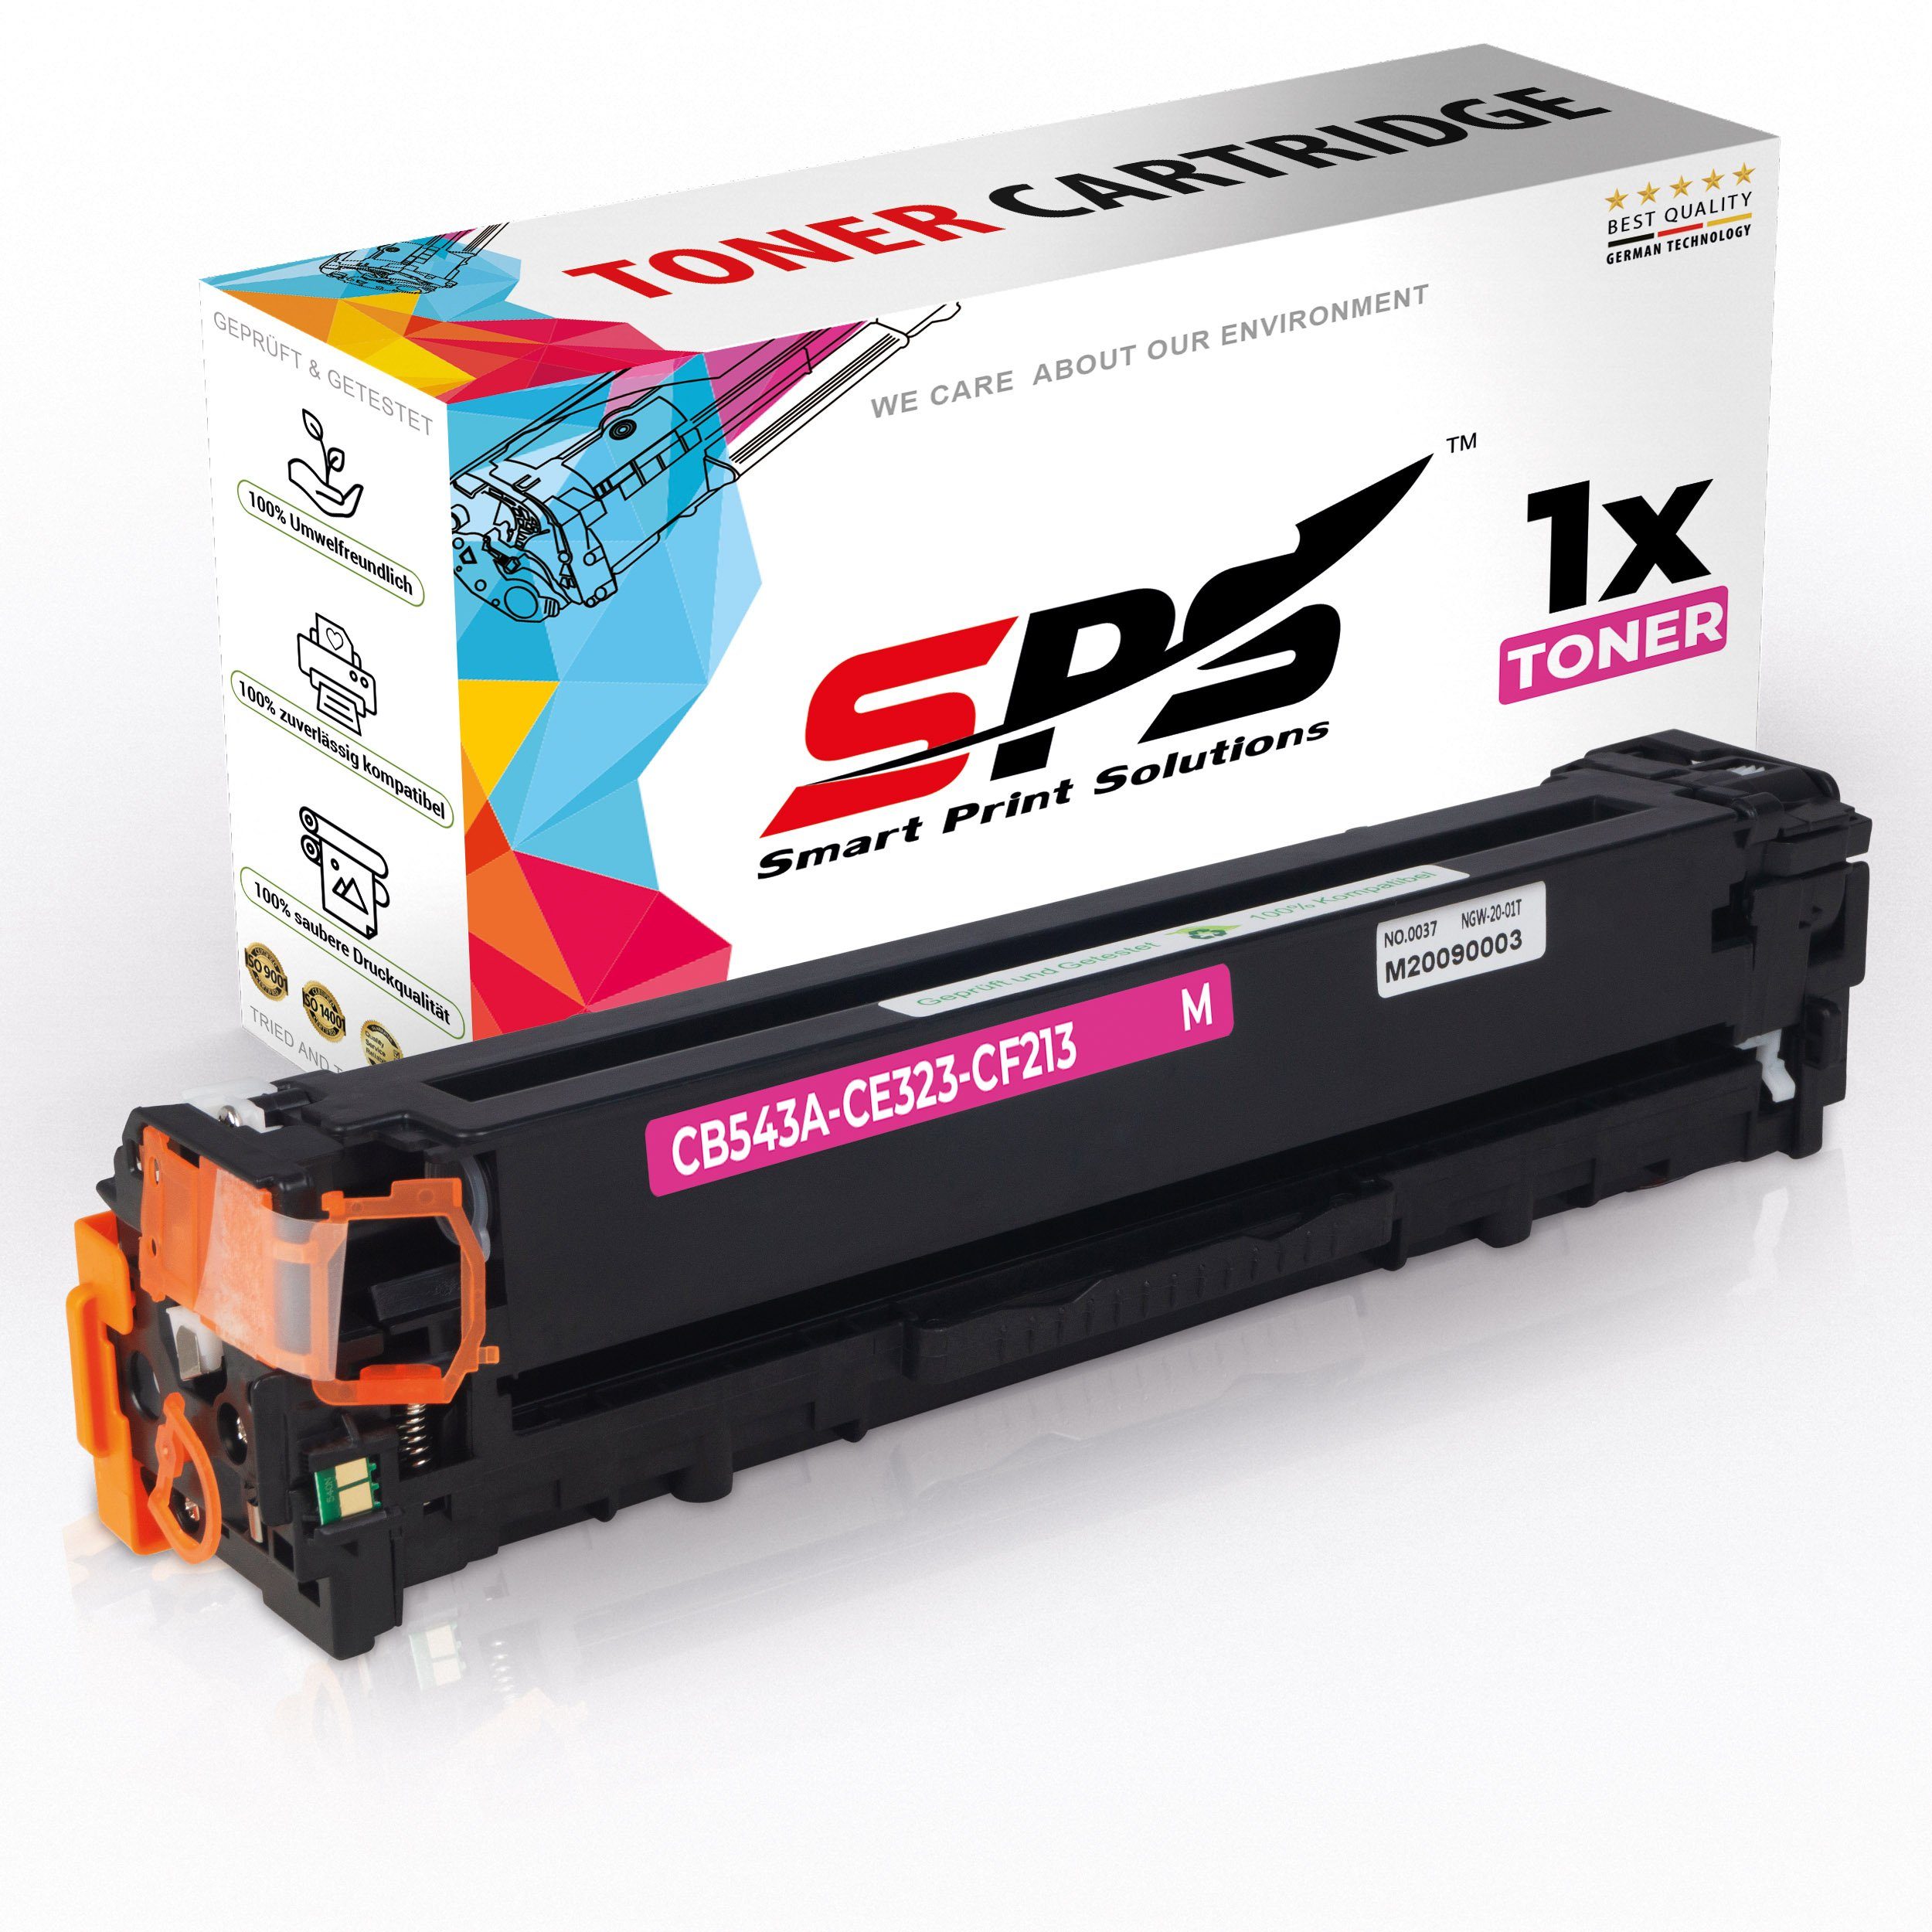 SPS Tonerkartusche Kompatibel für HP Color LaserJet CM 1312 WI MFP (CB543A/125A) Toner-Ka, (1er Pack)